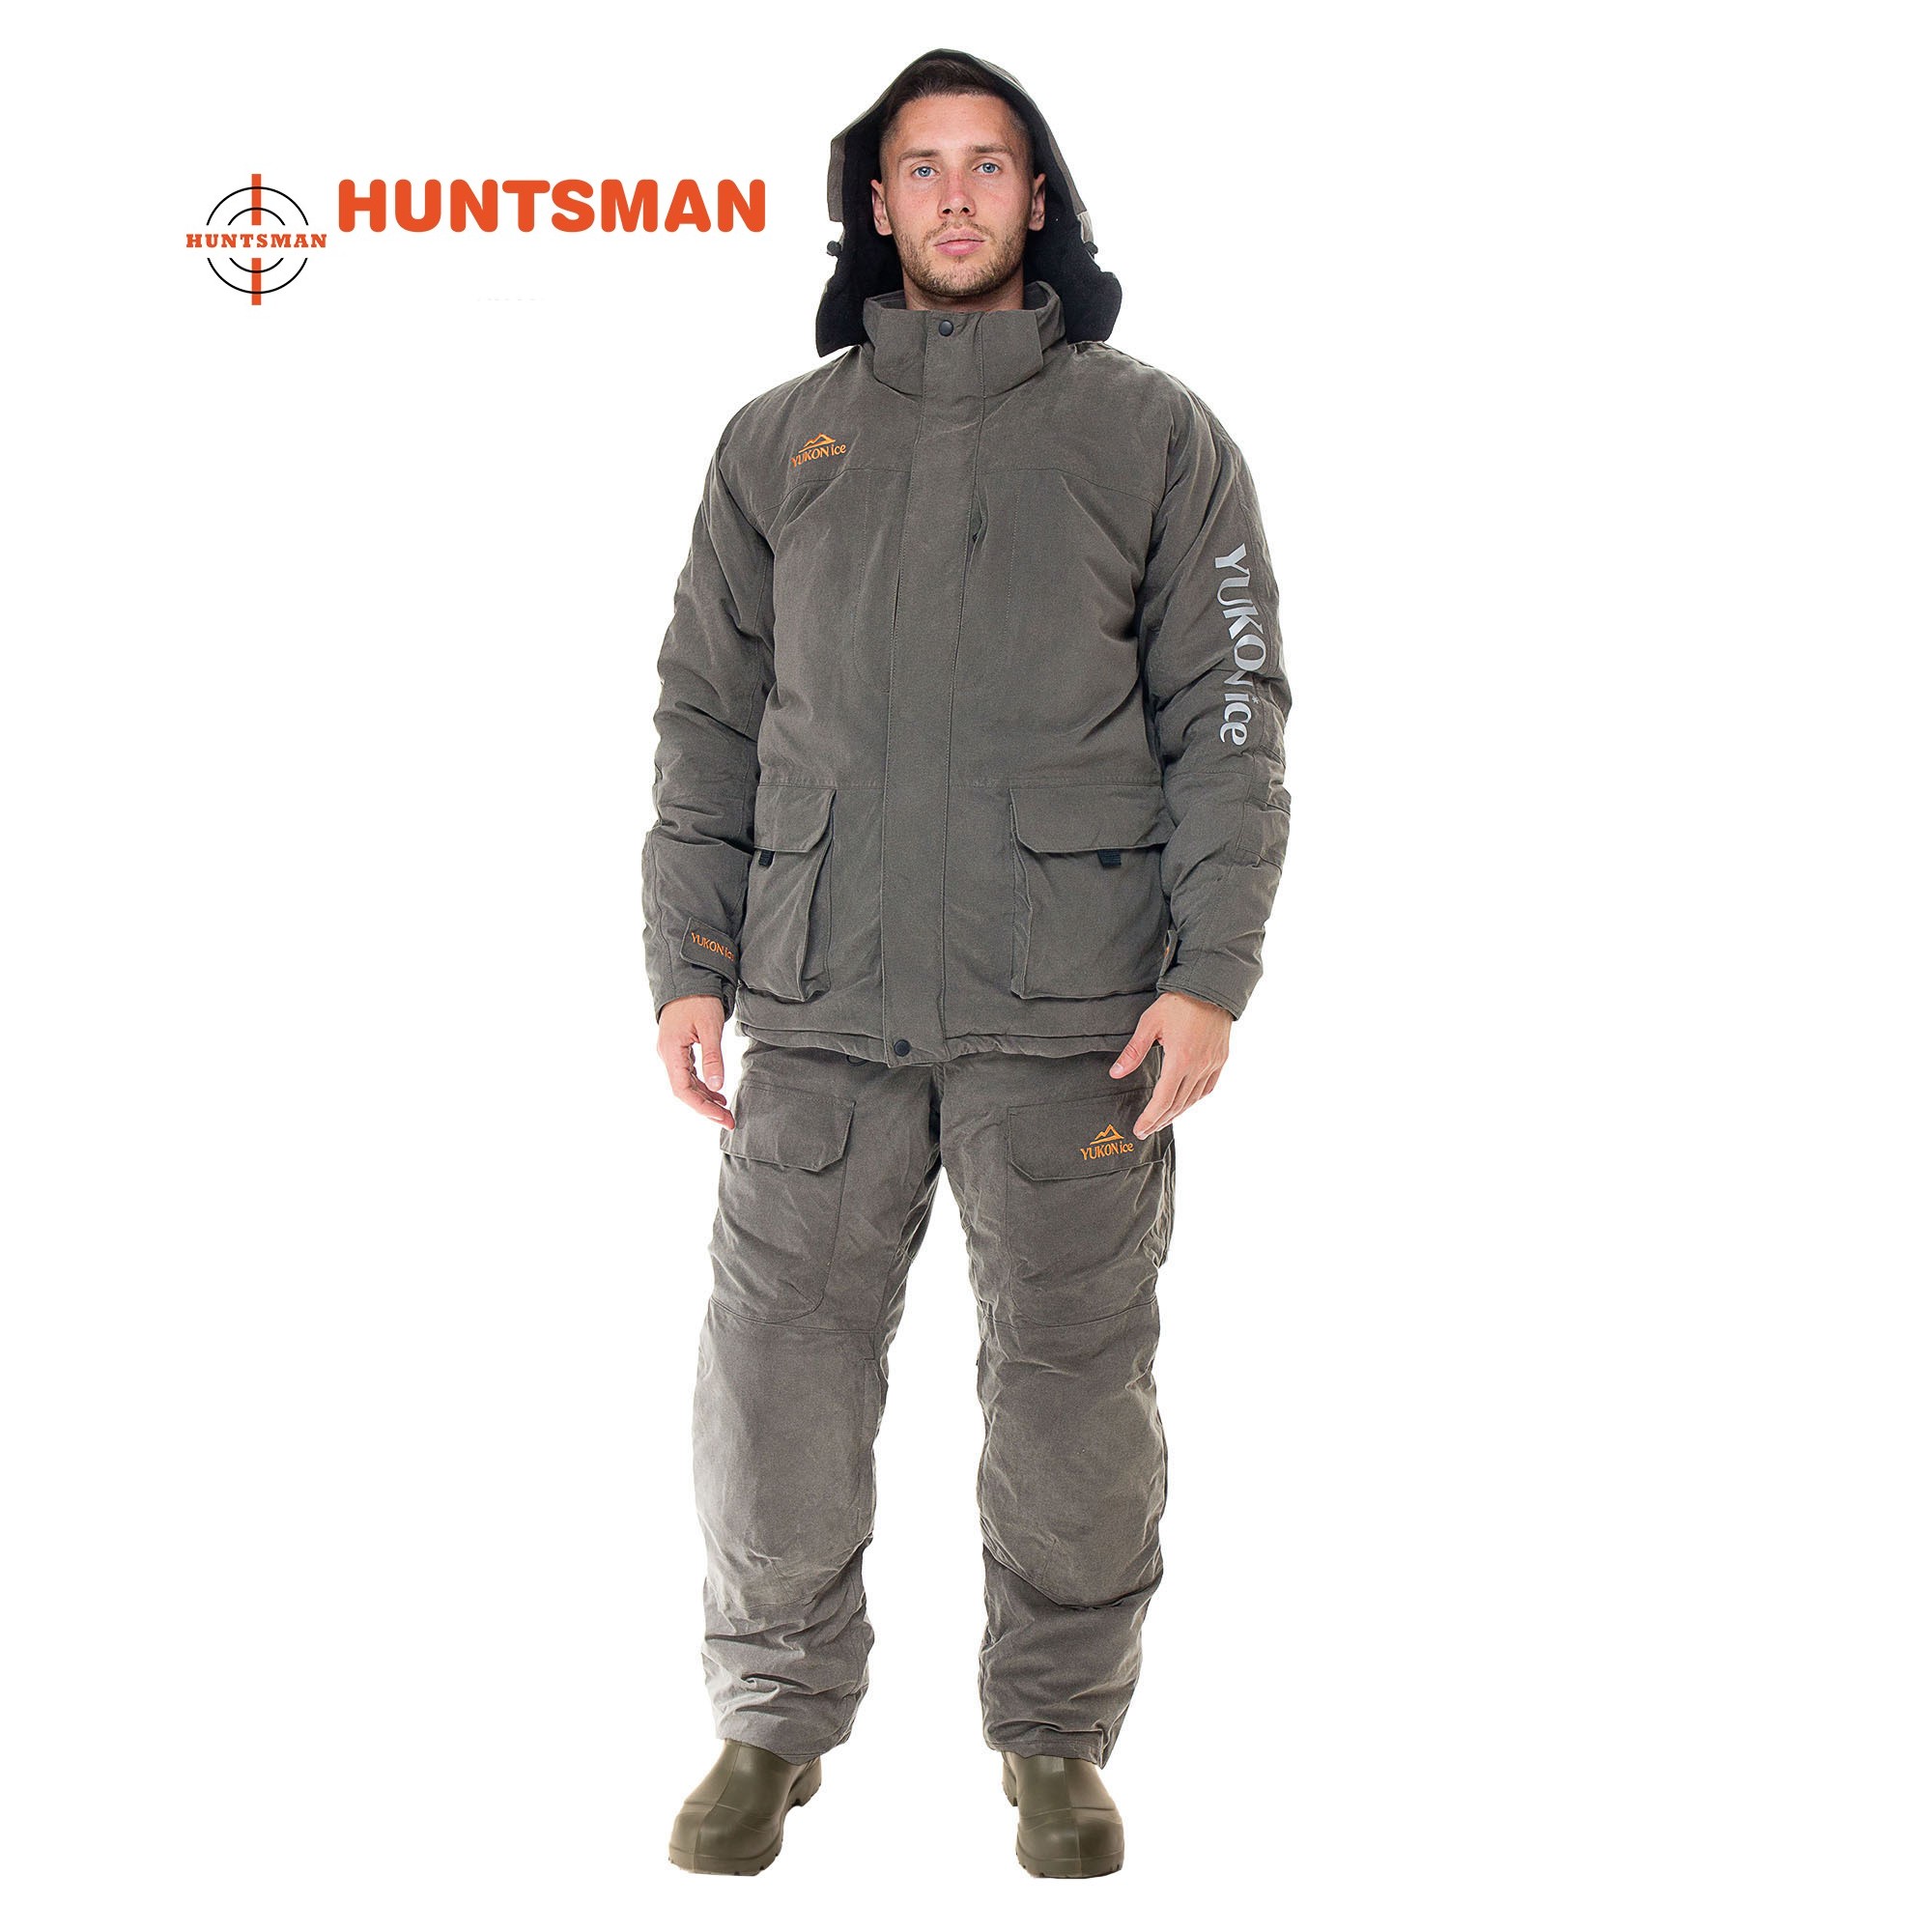 Žieminis kostiumas HUNTSMAN Yukon Ice Haki spalvos Finlyandia  -45C